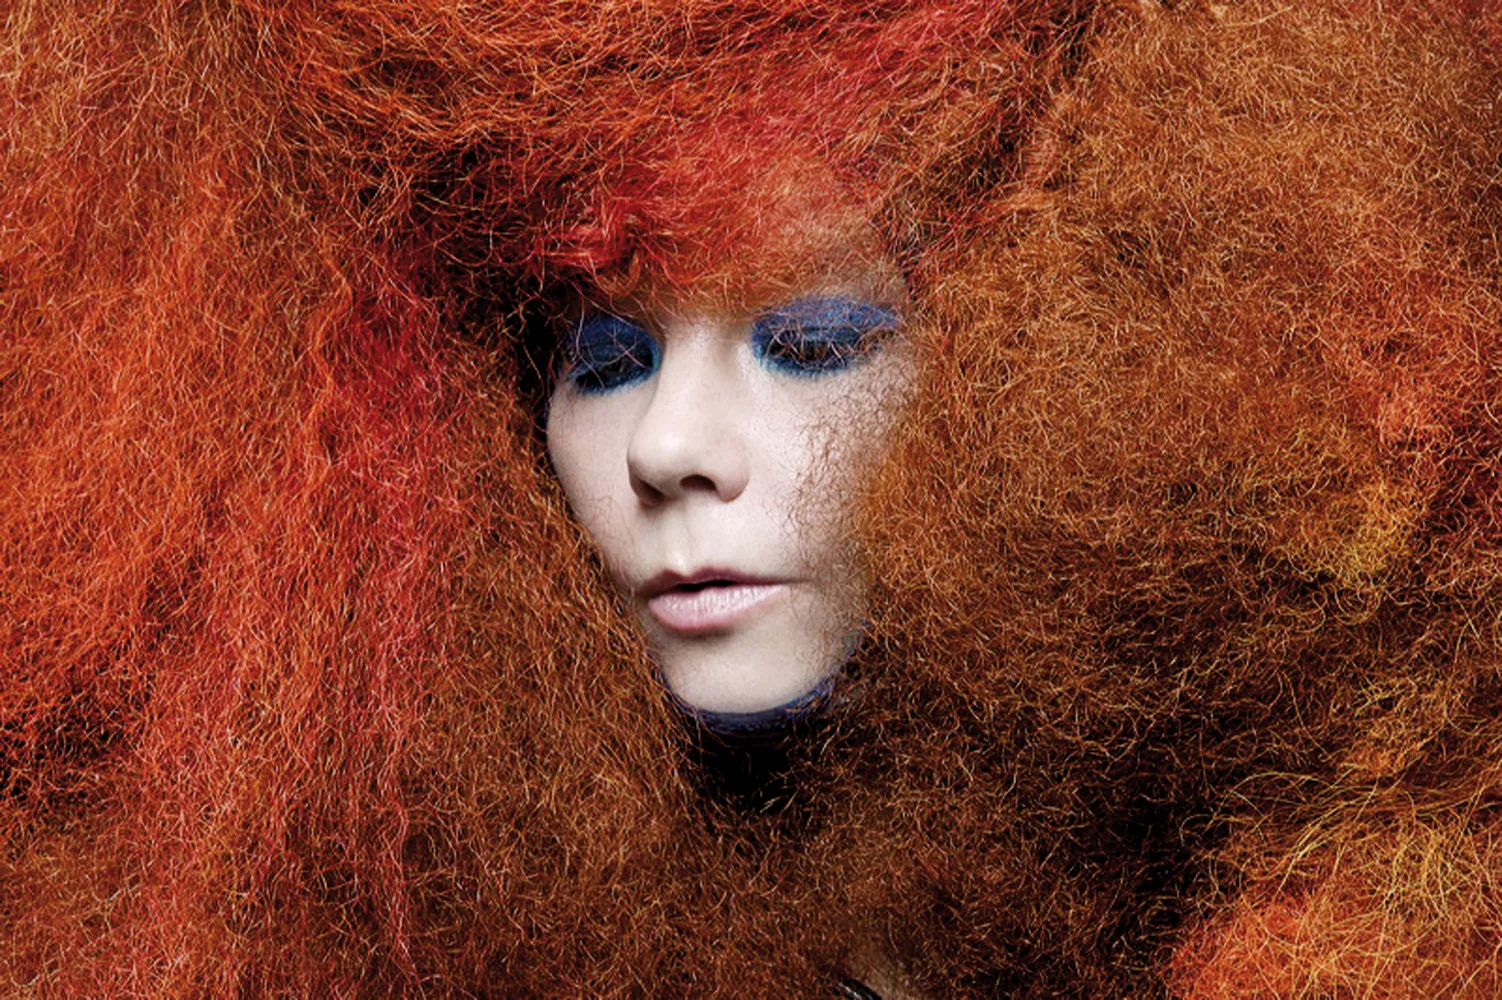 GULD FRA GEMMERNE: Da GAFFA mødte Björk – i cyberspace